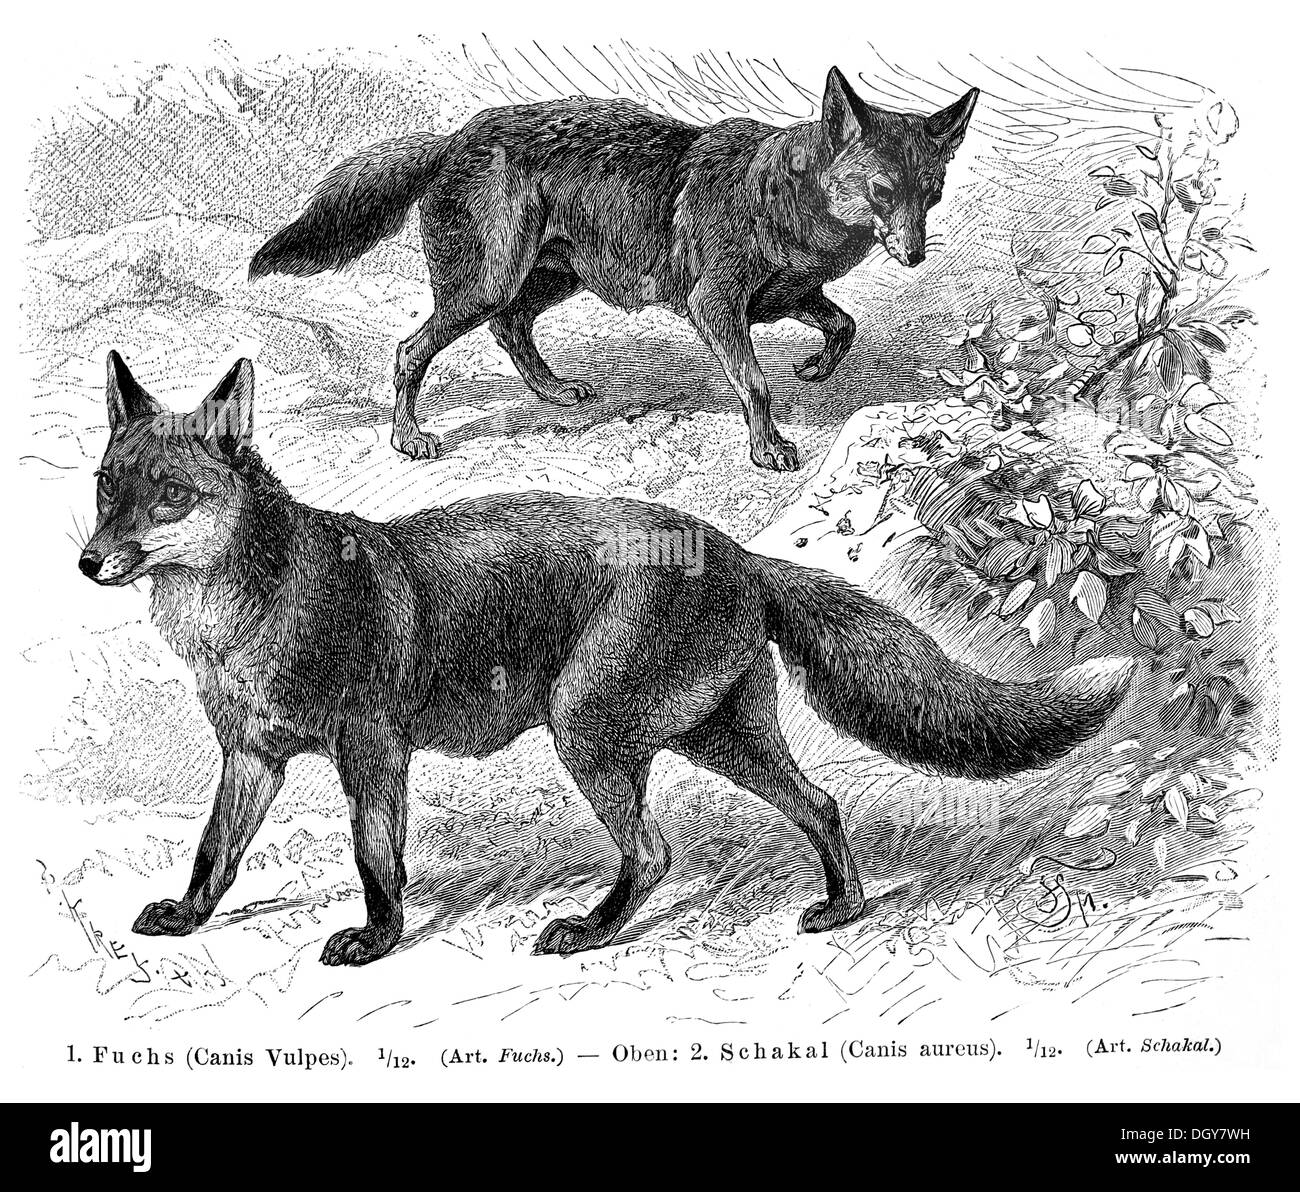 Fox (Canis vulpes) et le chacal (Canis aureus), illustration de Meyers Konversations-Lexikon encyclopédie, 1897 Banque D'Images